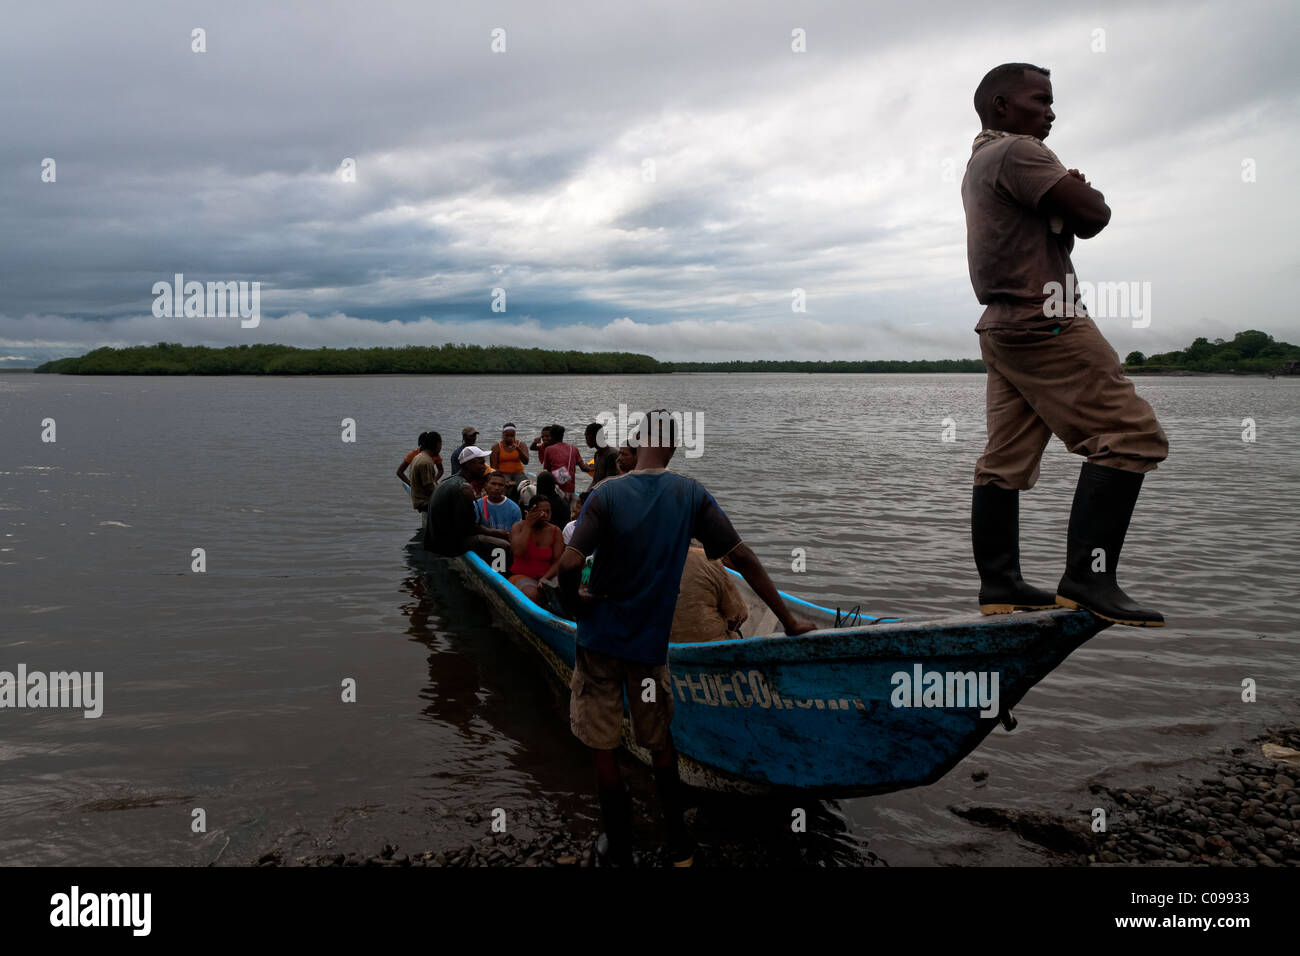 Kolumbianische Schalentiere Kommissionierer begeben Sie sich auf ein Kanu gonna die Mangrovensümpfe an der Pazifikküste, Kolumbien. Stockfoto